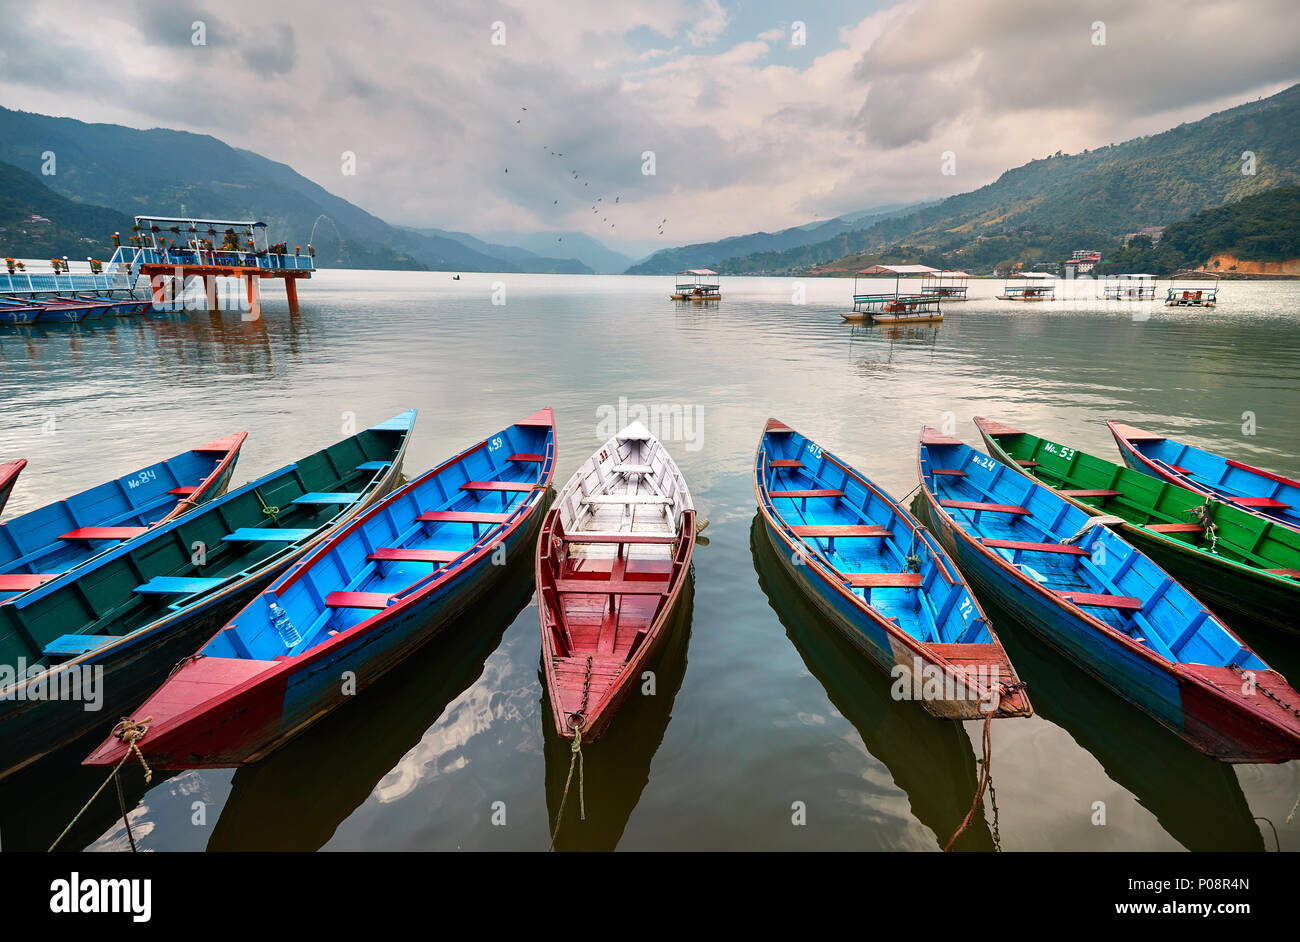 Color boats at Phewa lake shore in Pokhara, Nepal. Stock Photo